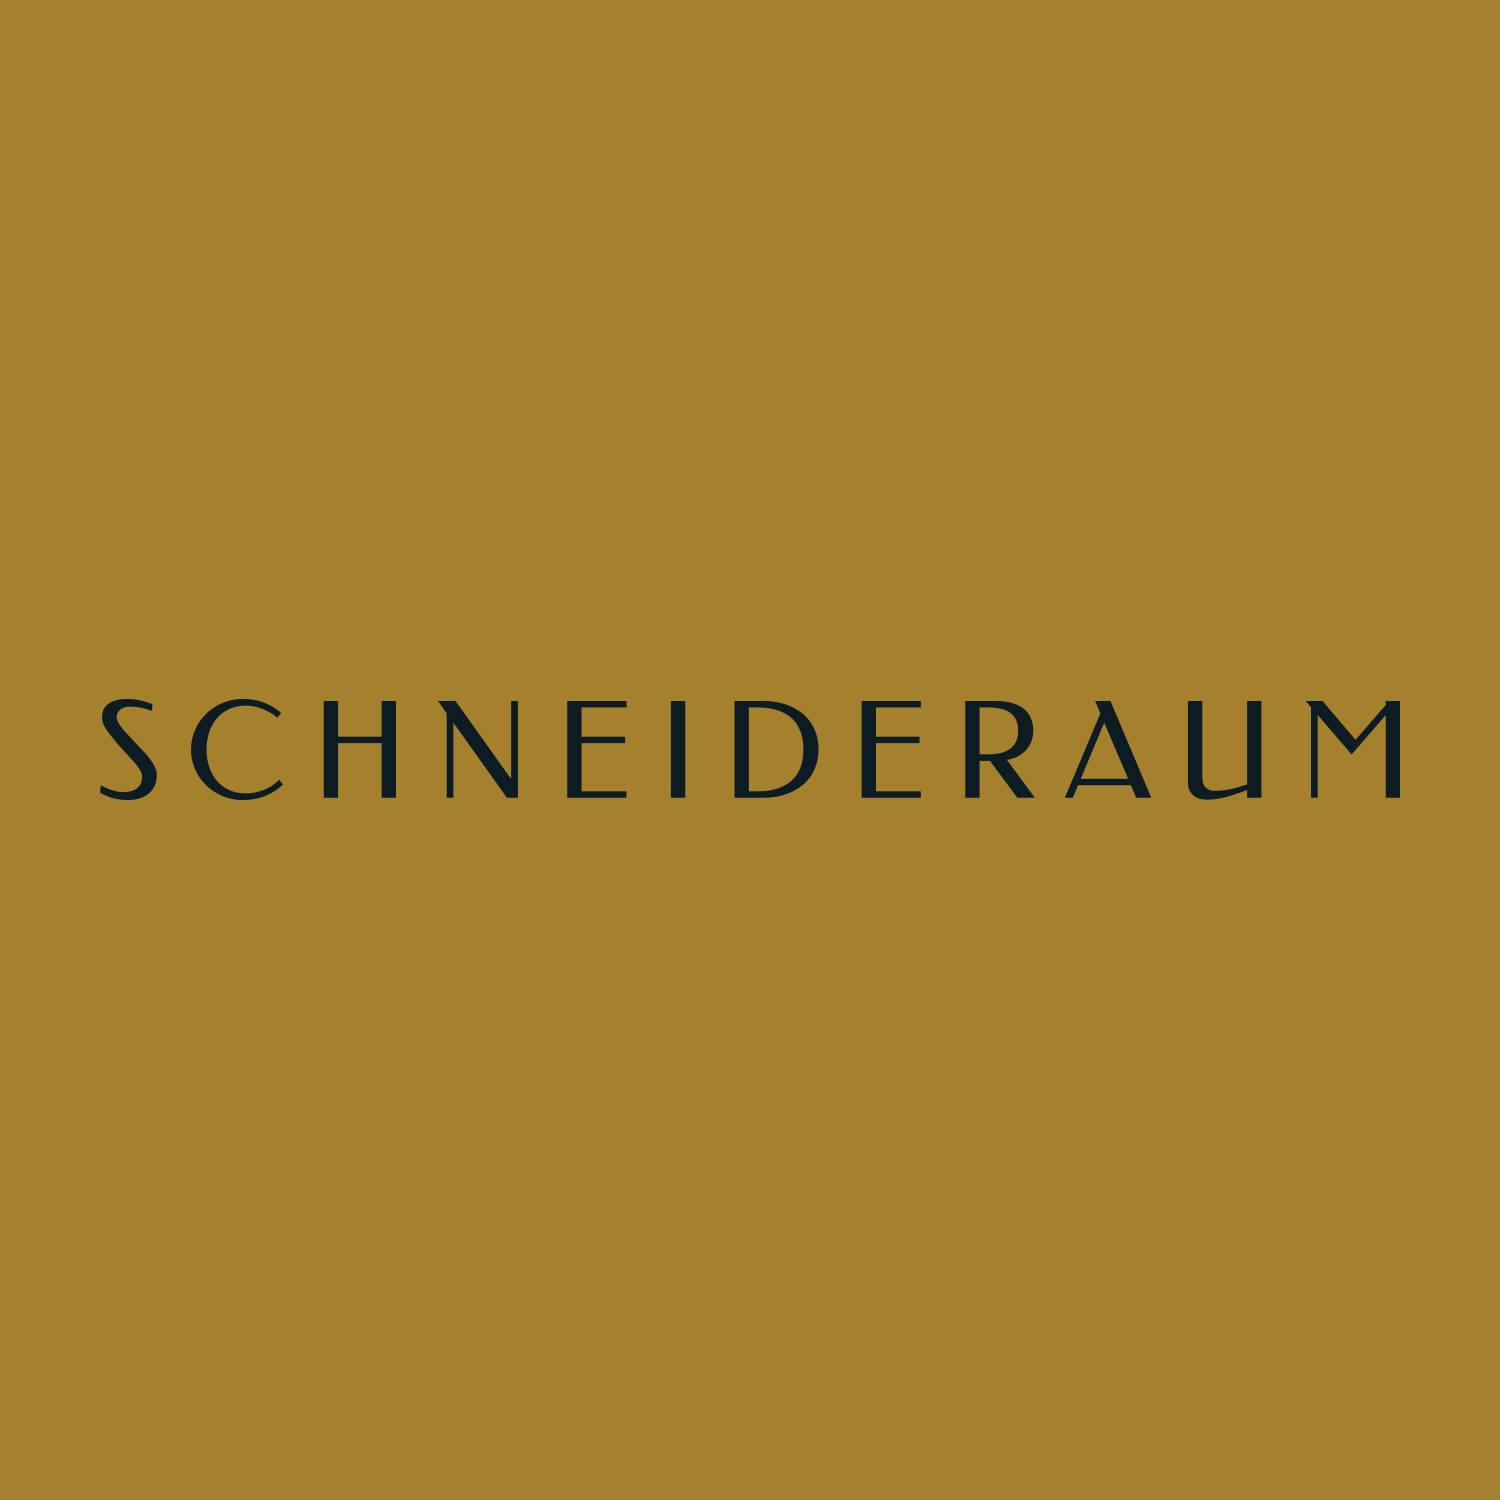 (c) Schneideraum-hamburg.de